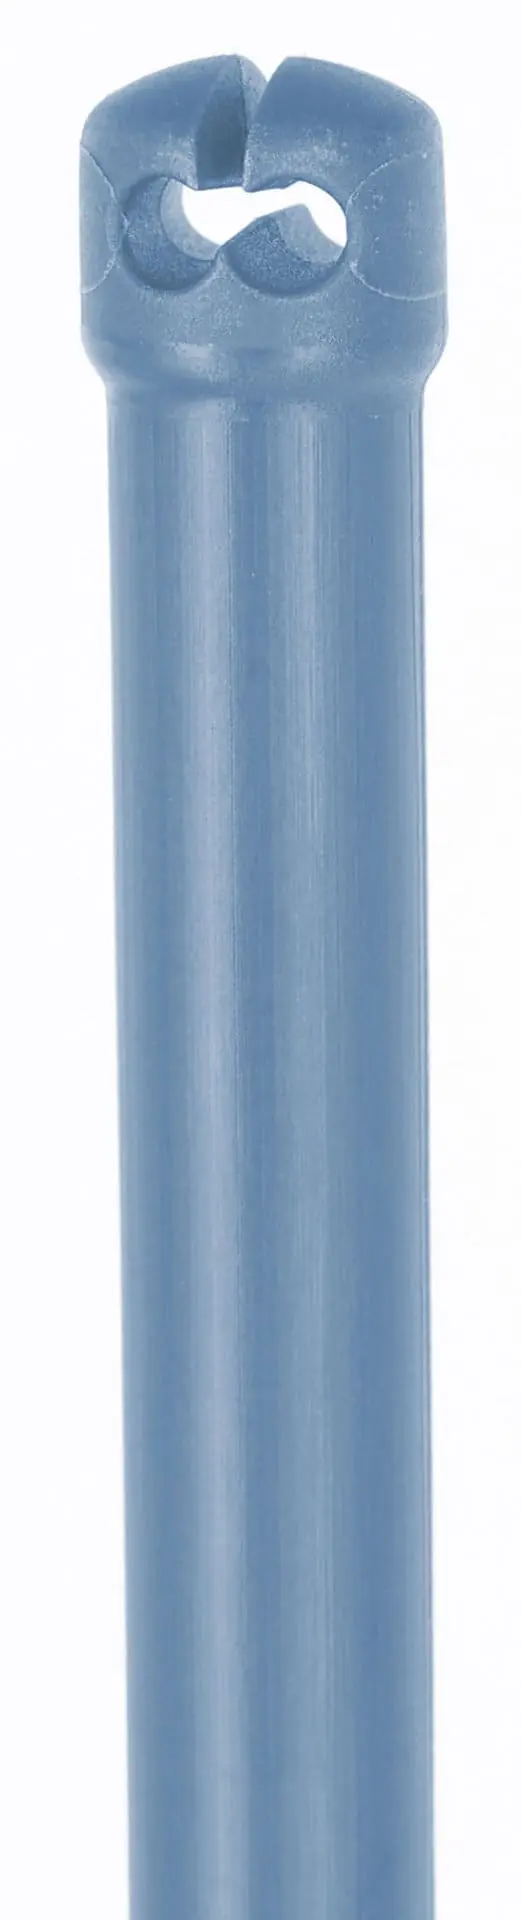 Fårnät TitanNet Premium 50m x 108 cm orange/blå dubbelspets